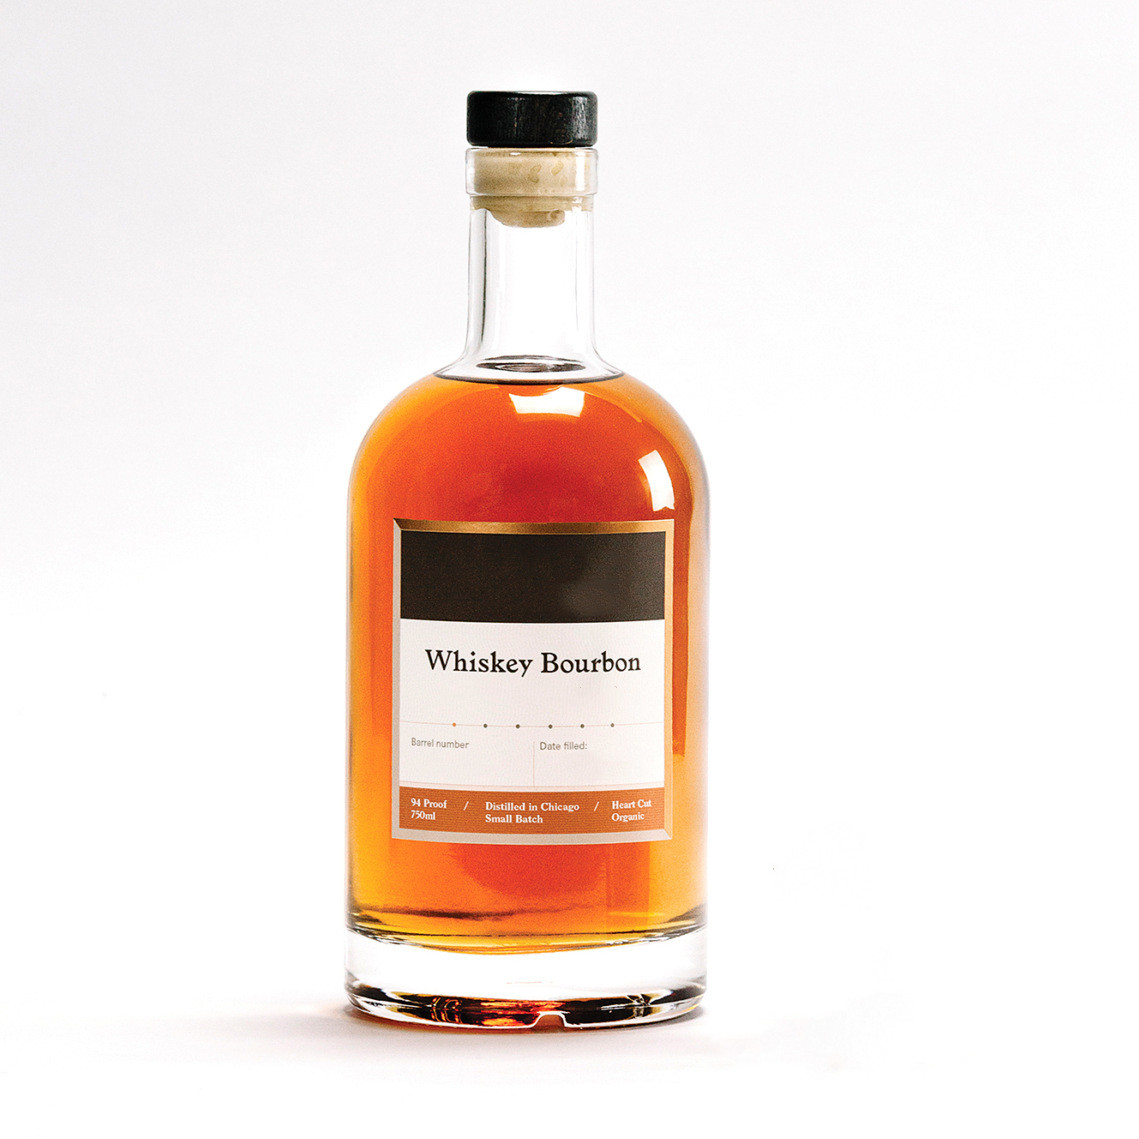 Custom Design Glass Liquor Bottles For Vodka Whisky 